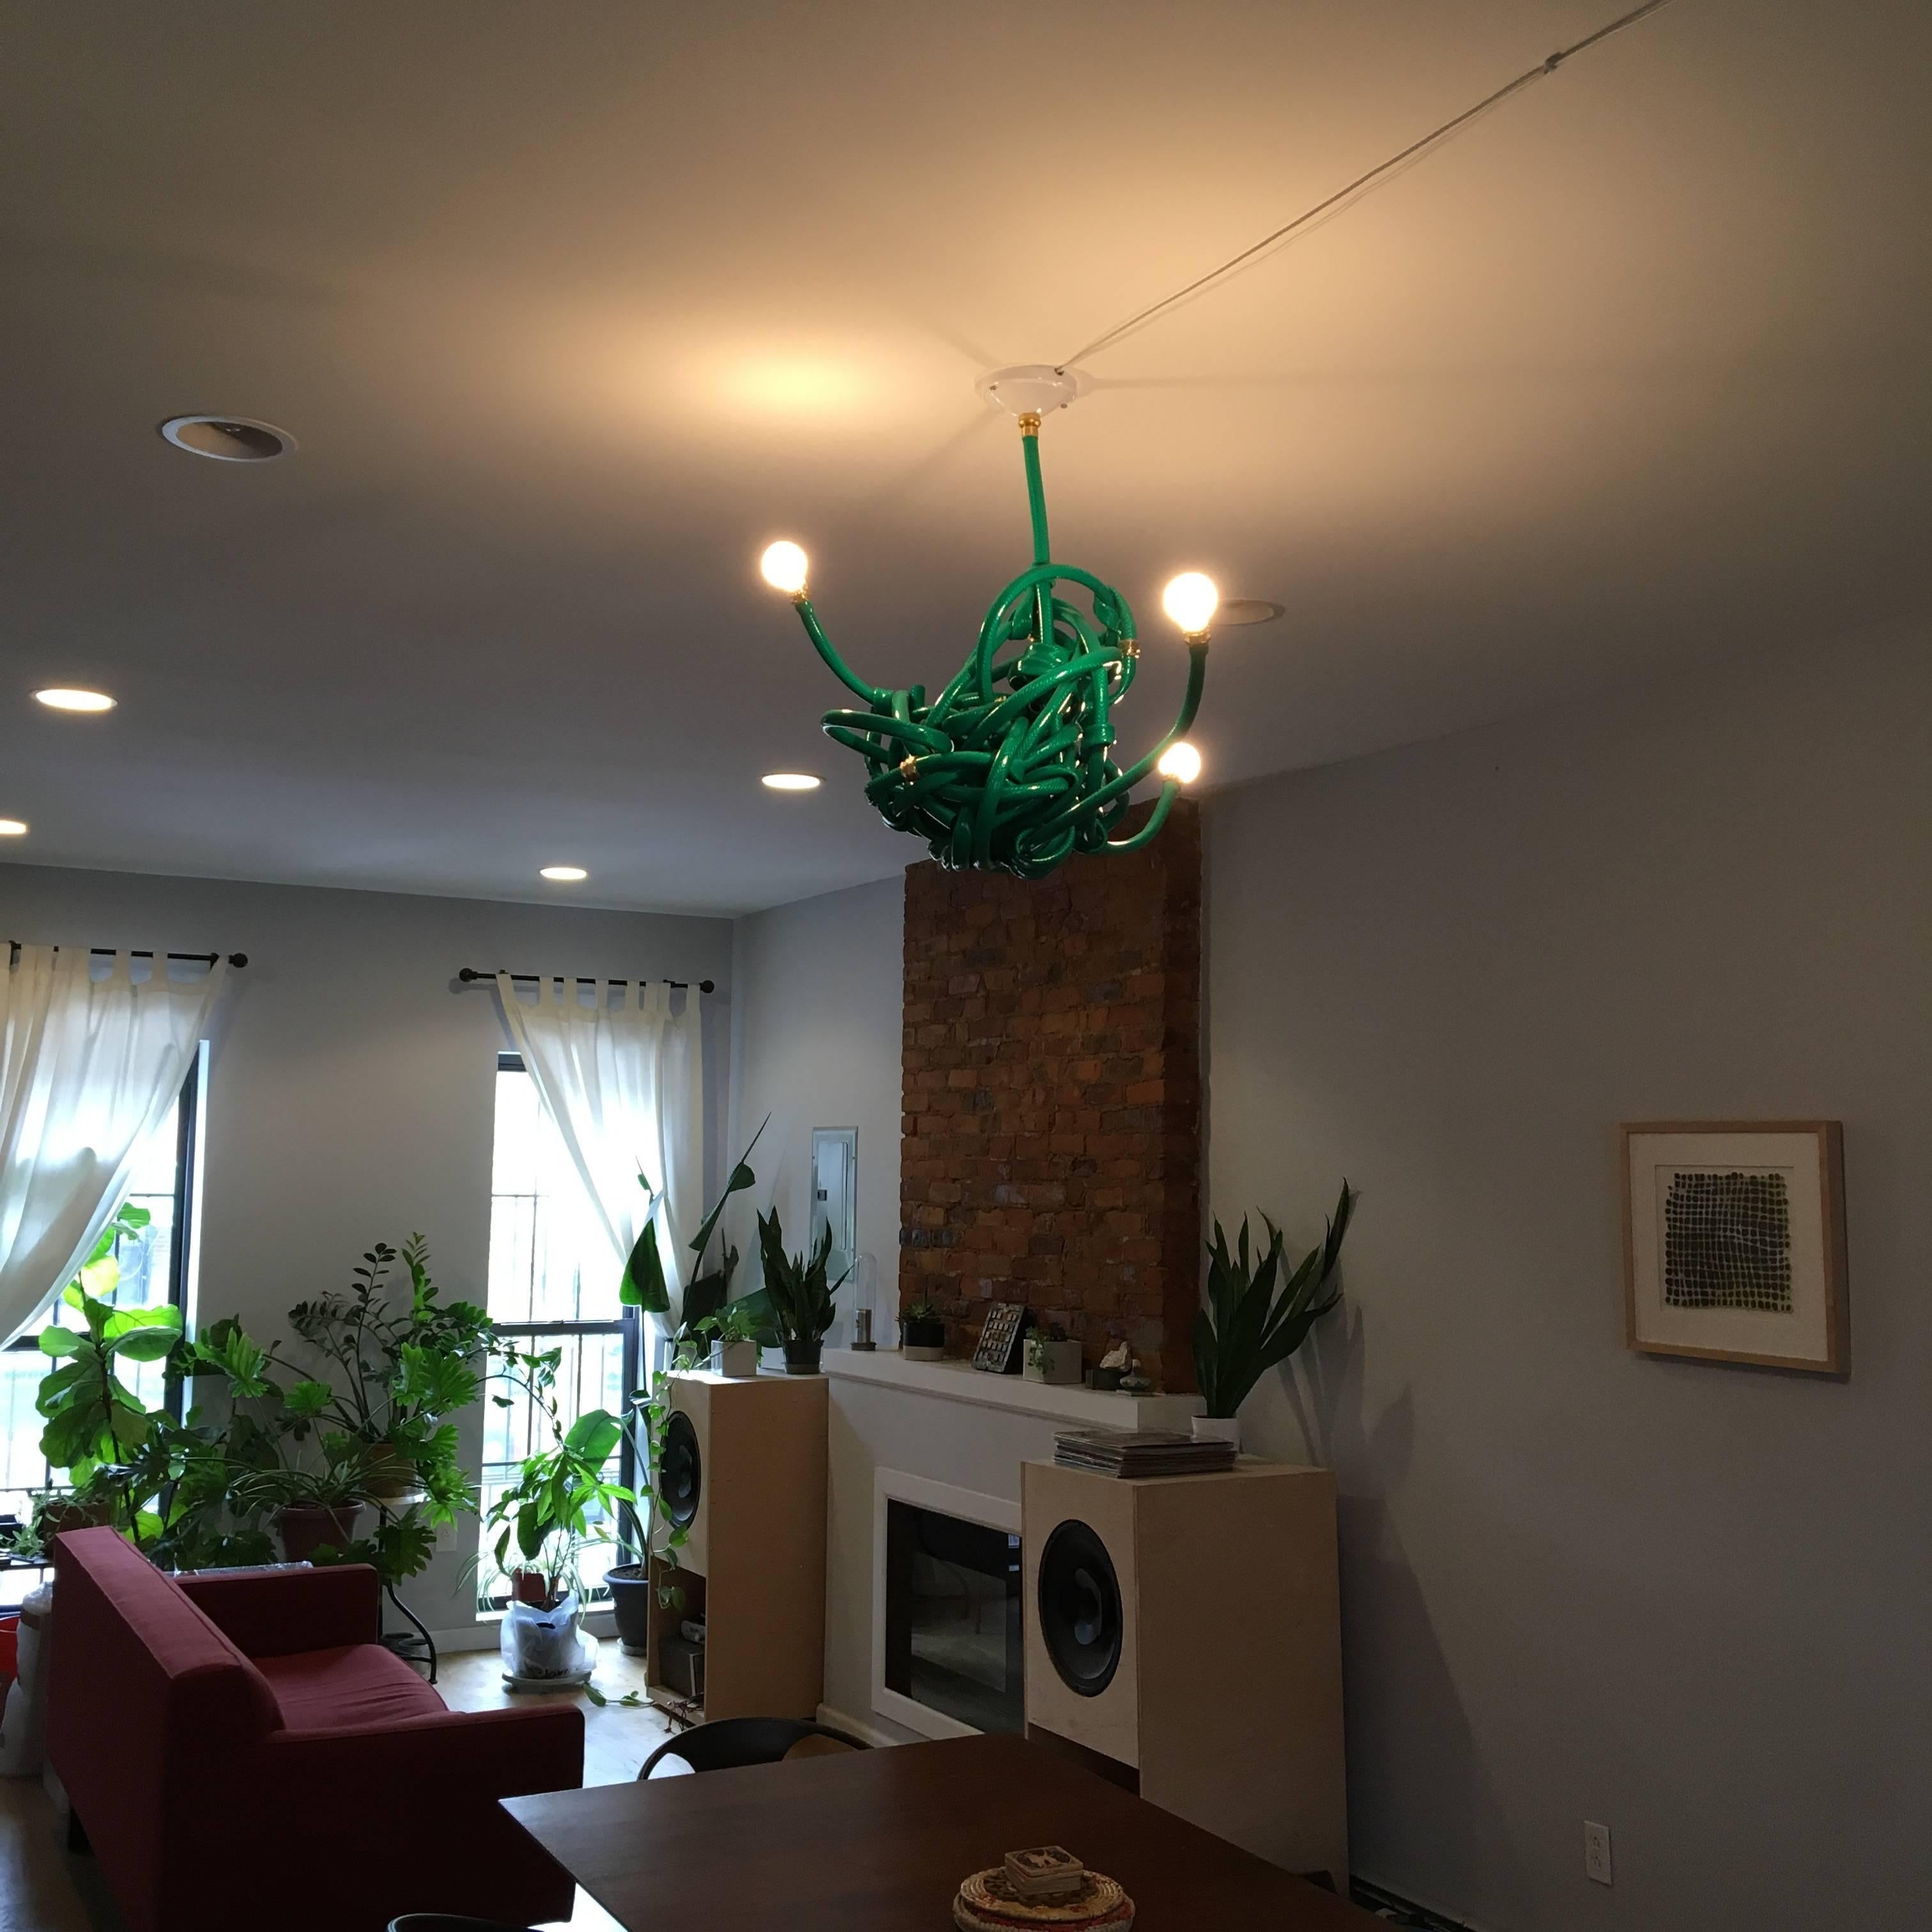 American Green Garden Hose Chandelier Style Lighting Fixture, Justin Cooper Studios For Sale